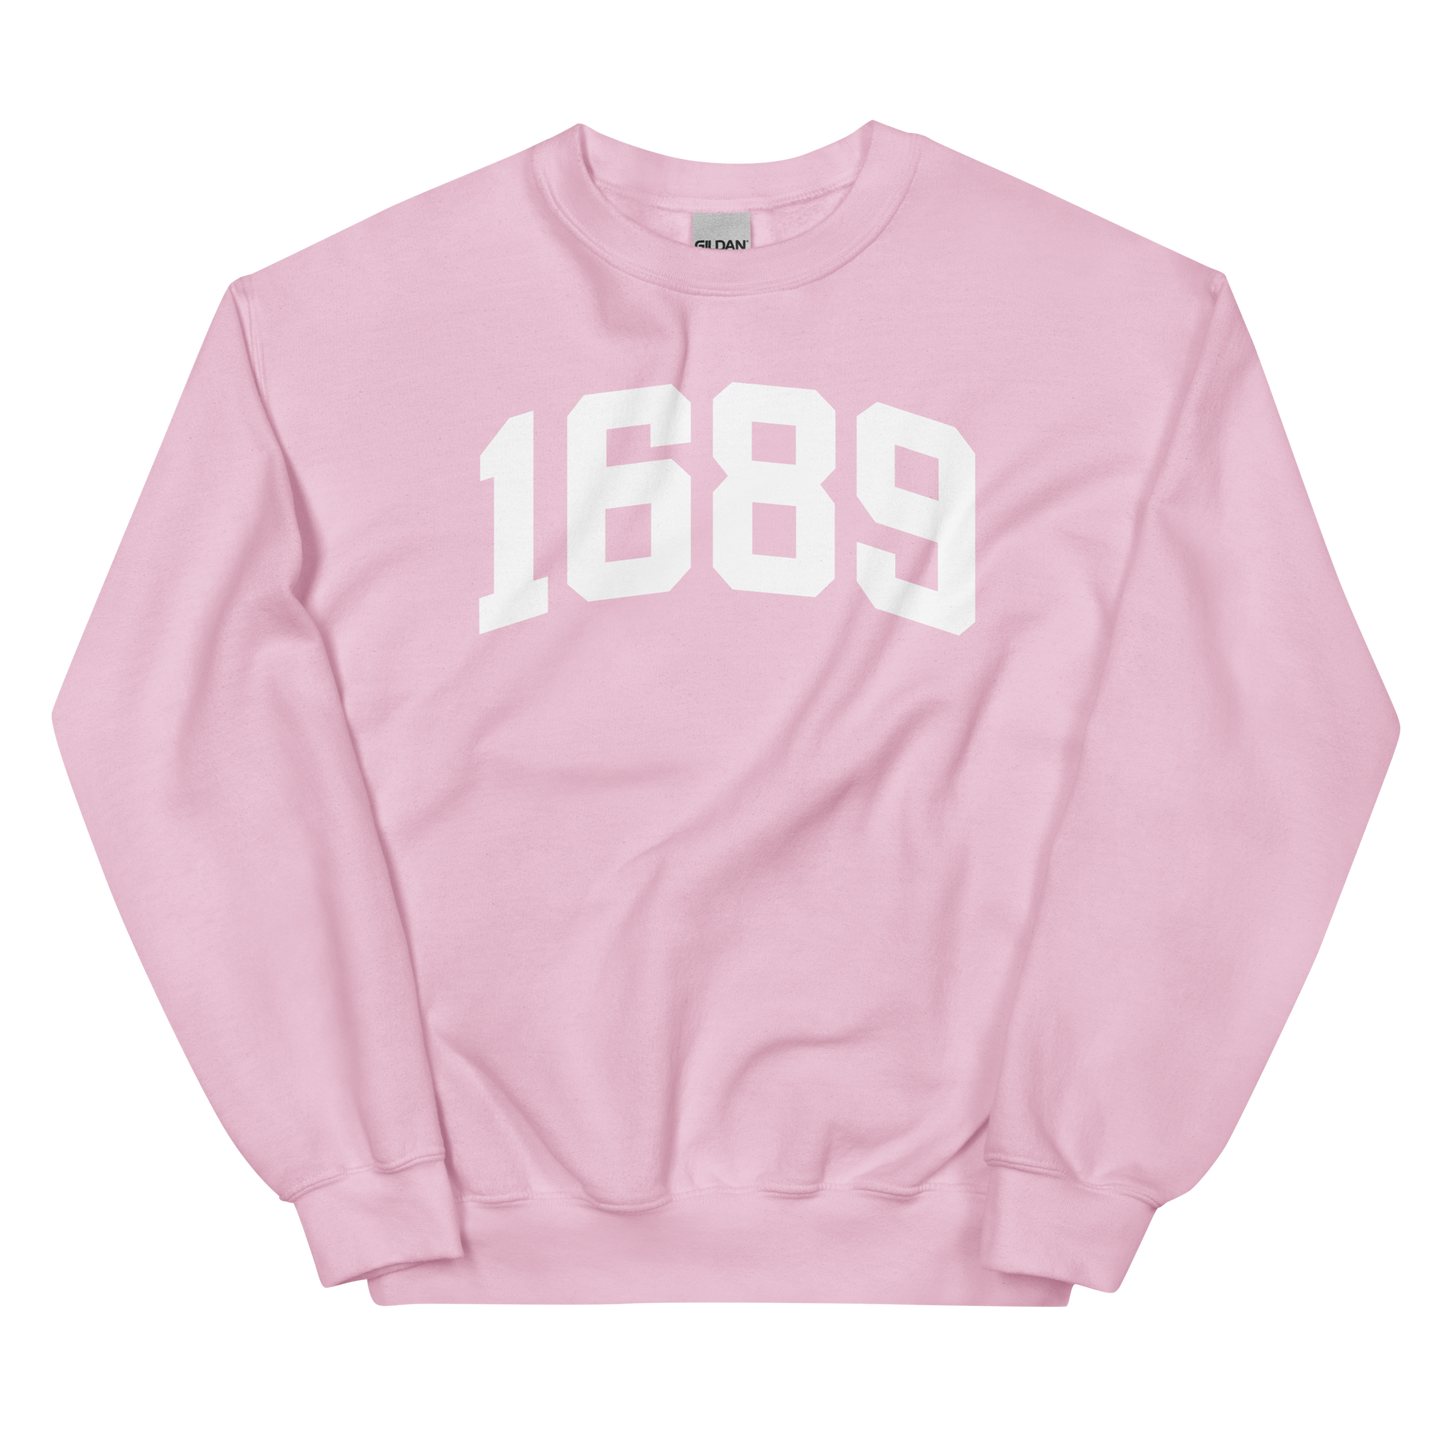 1689 Sweatshirt